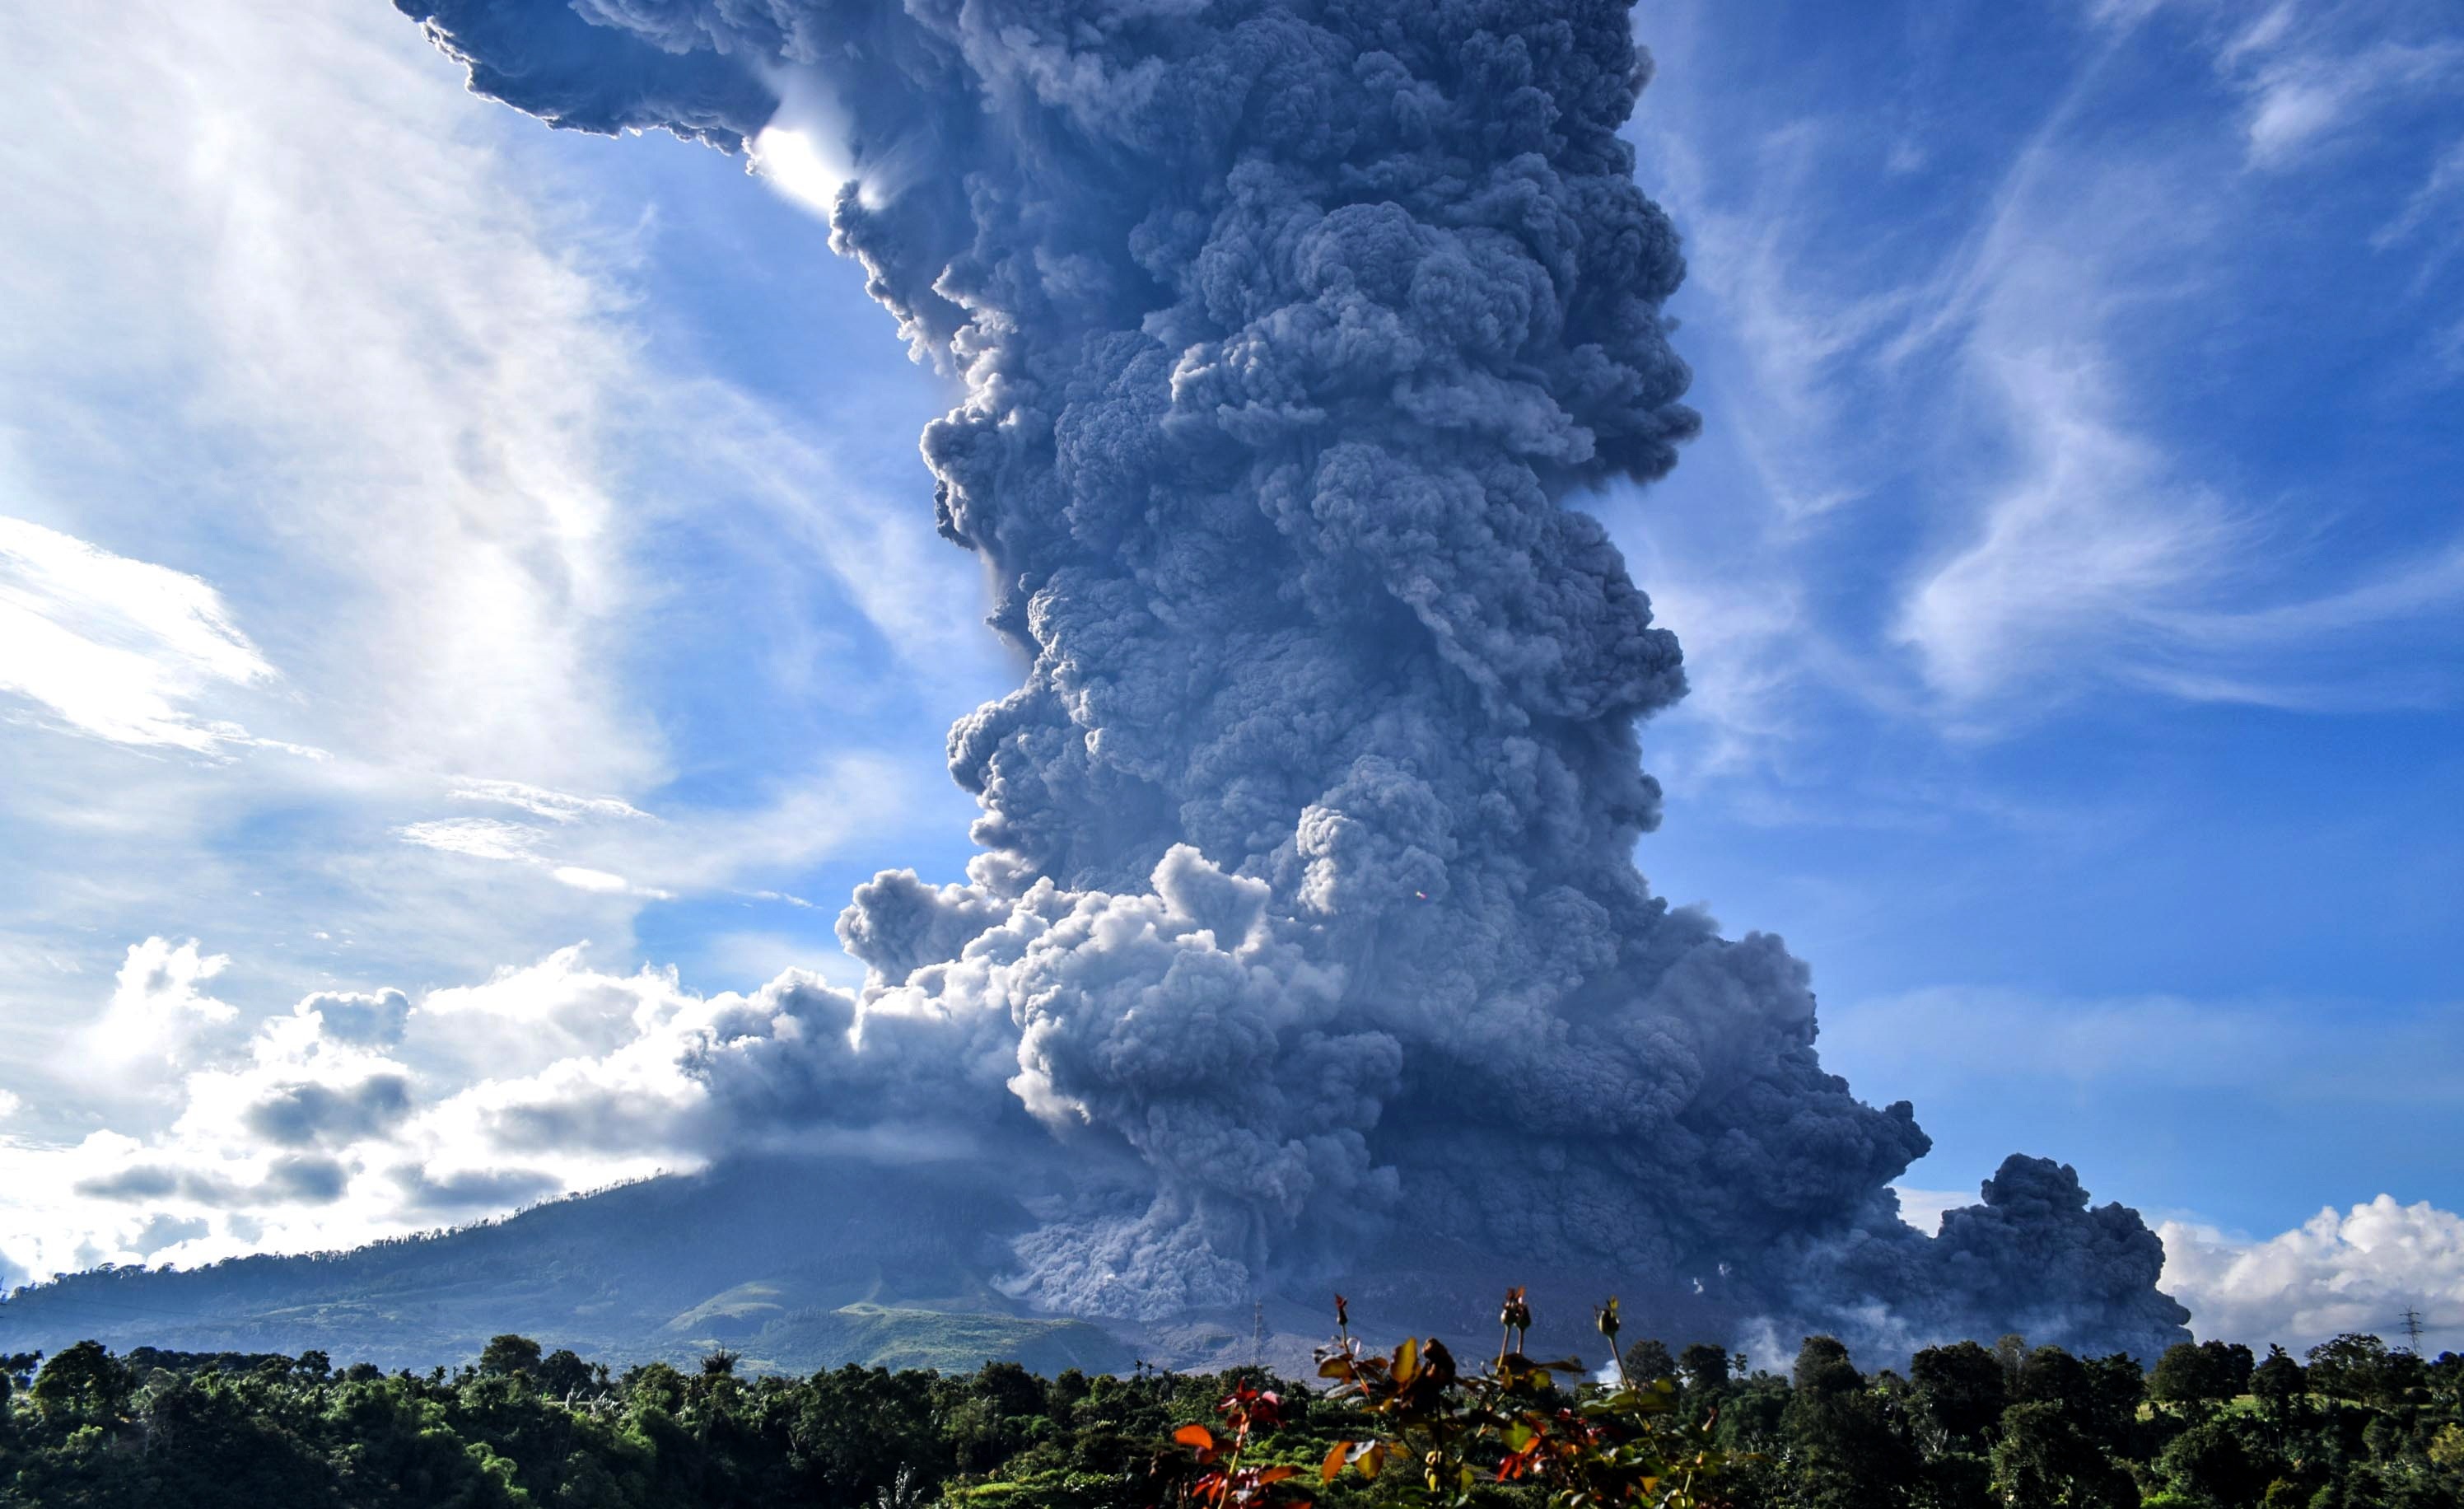 El volcán Sinabung, en Indonesia, hizo erupción el lunes, arrojando material volcánico a una altura de hasta 5.000 metros (16.400 pies) y depositando ceniza en las aldeas. (EFE/EPA/SARIANTO SEMBIRING) 